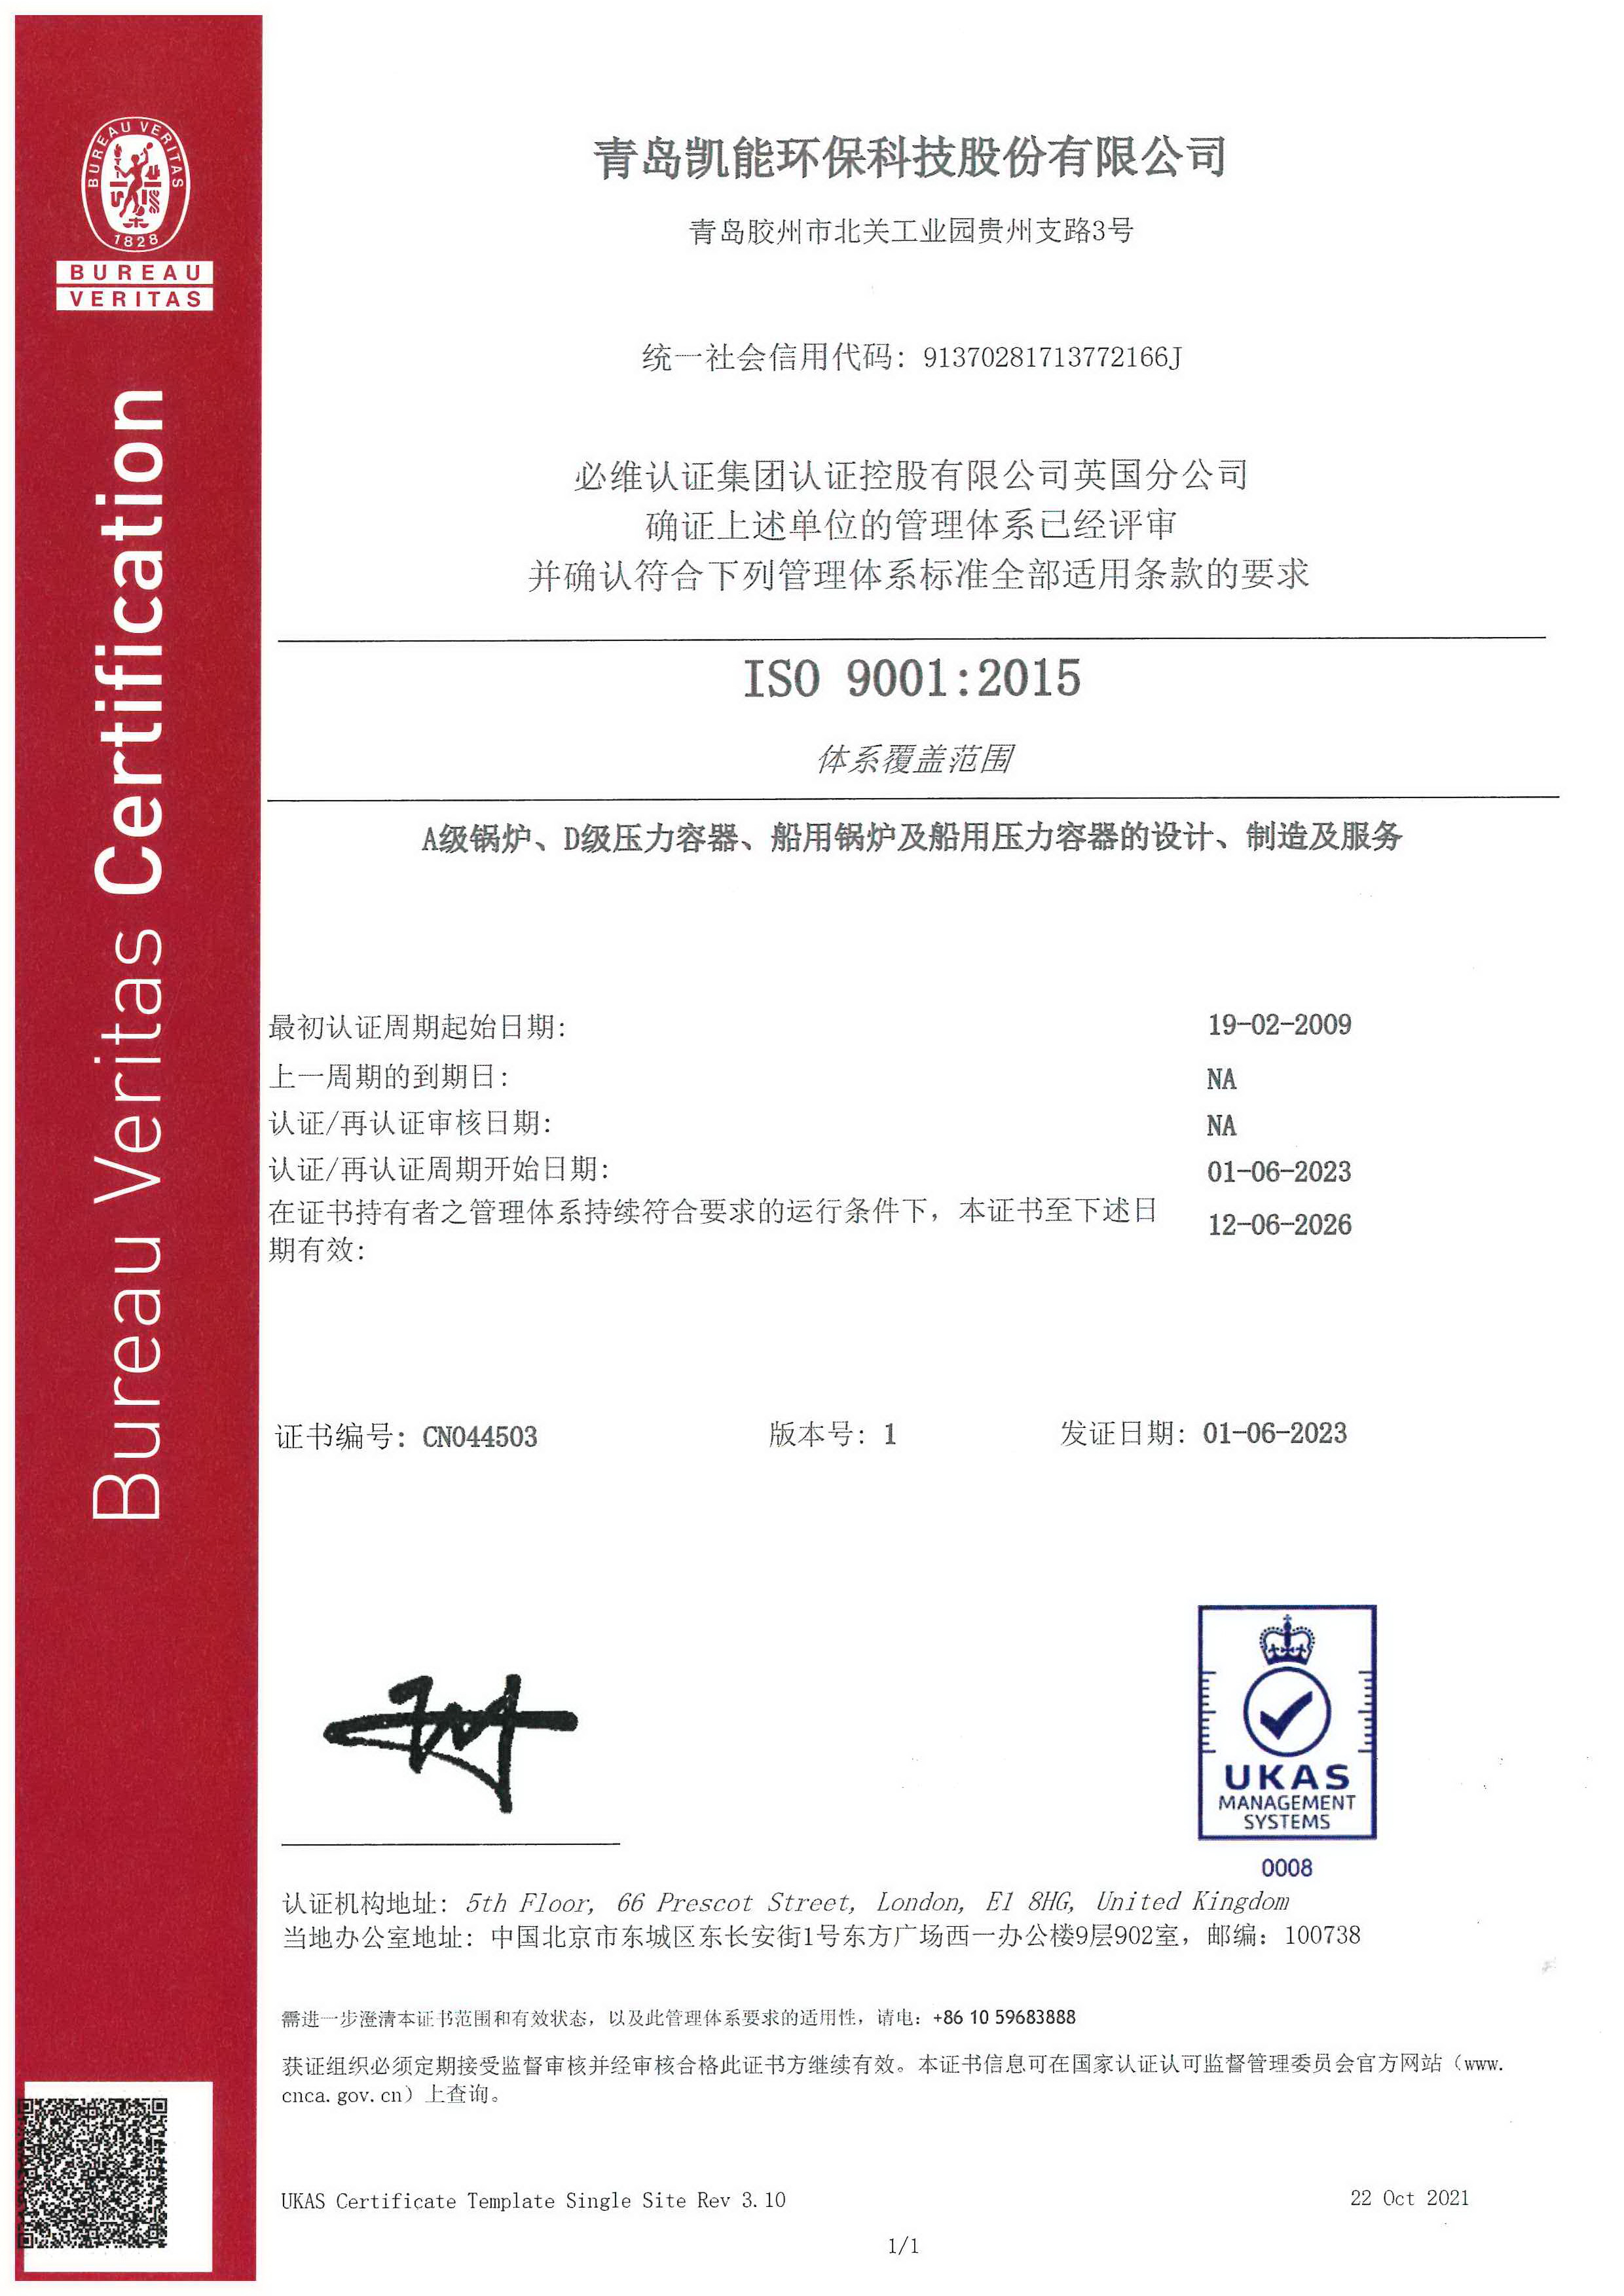 新葡的京集团350vip8888 ISO 9001质量体系认证证书